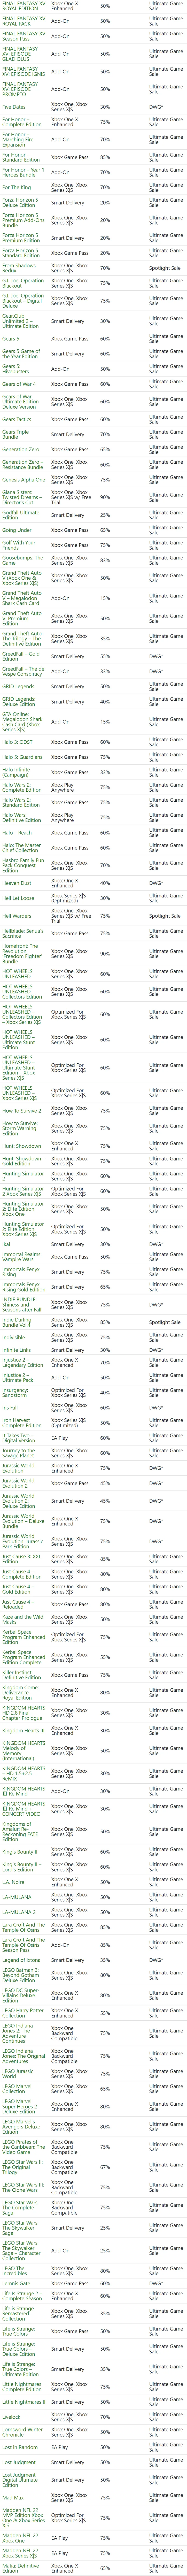 7 月 26 日 - 8 月 1 日 Xbox 金會員遊戲促銷陣容公佈